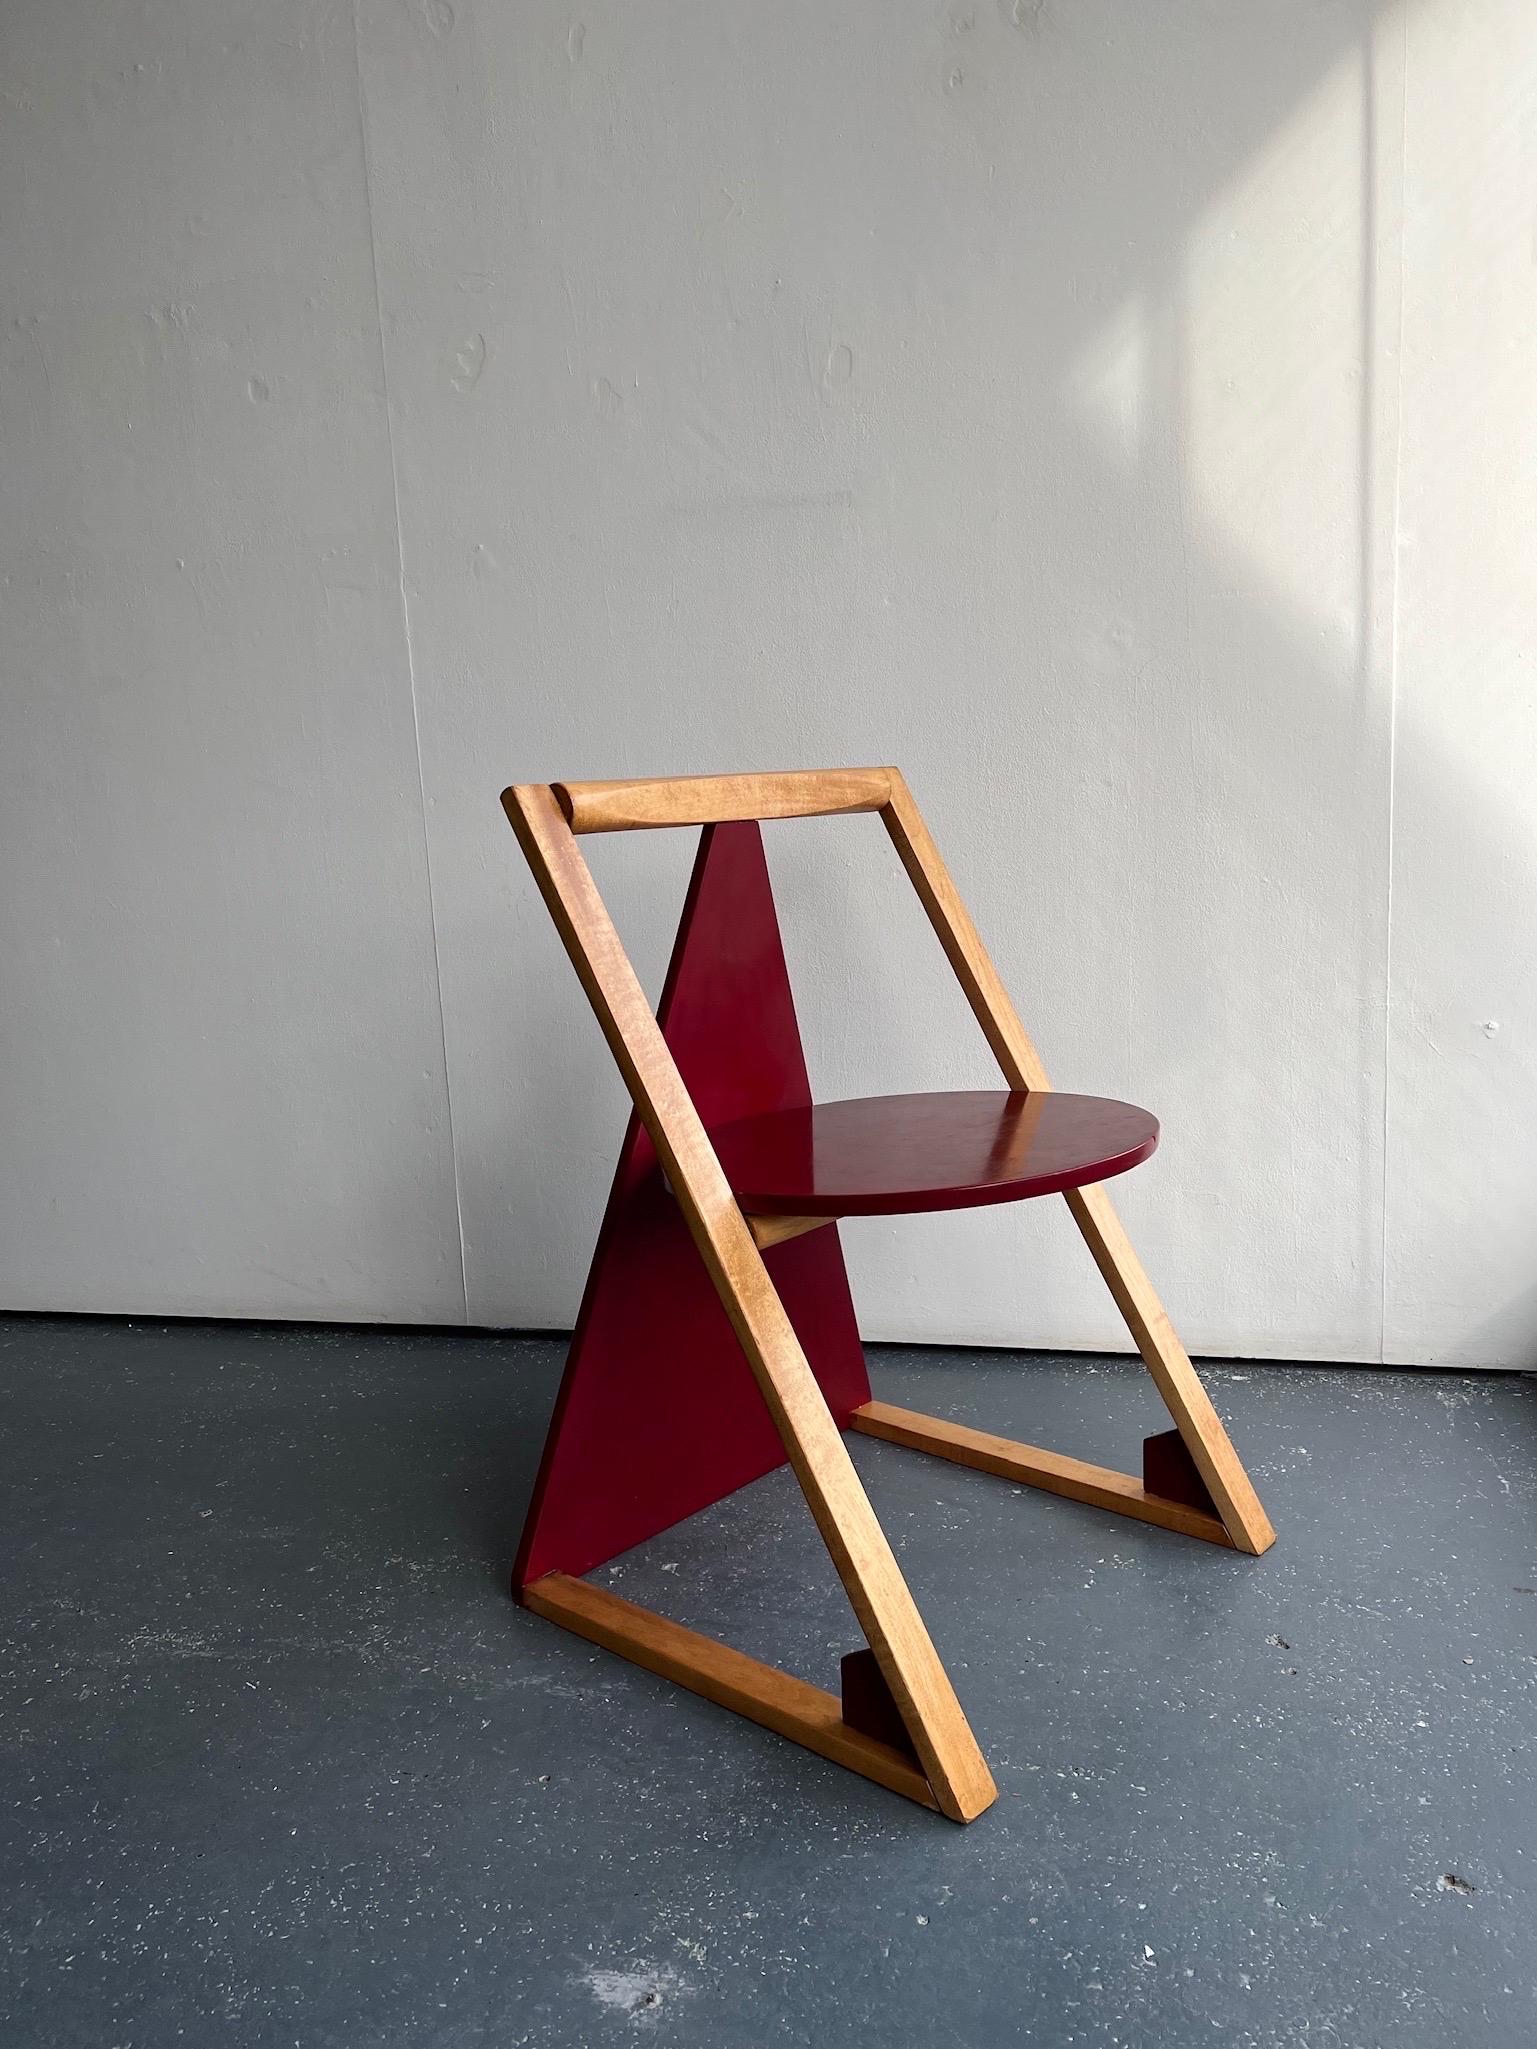 Beech Triangular Wooden Memphis Style Chair